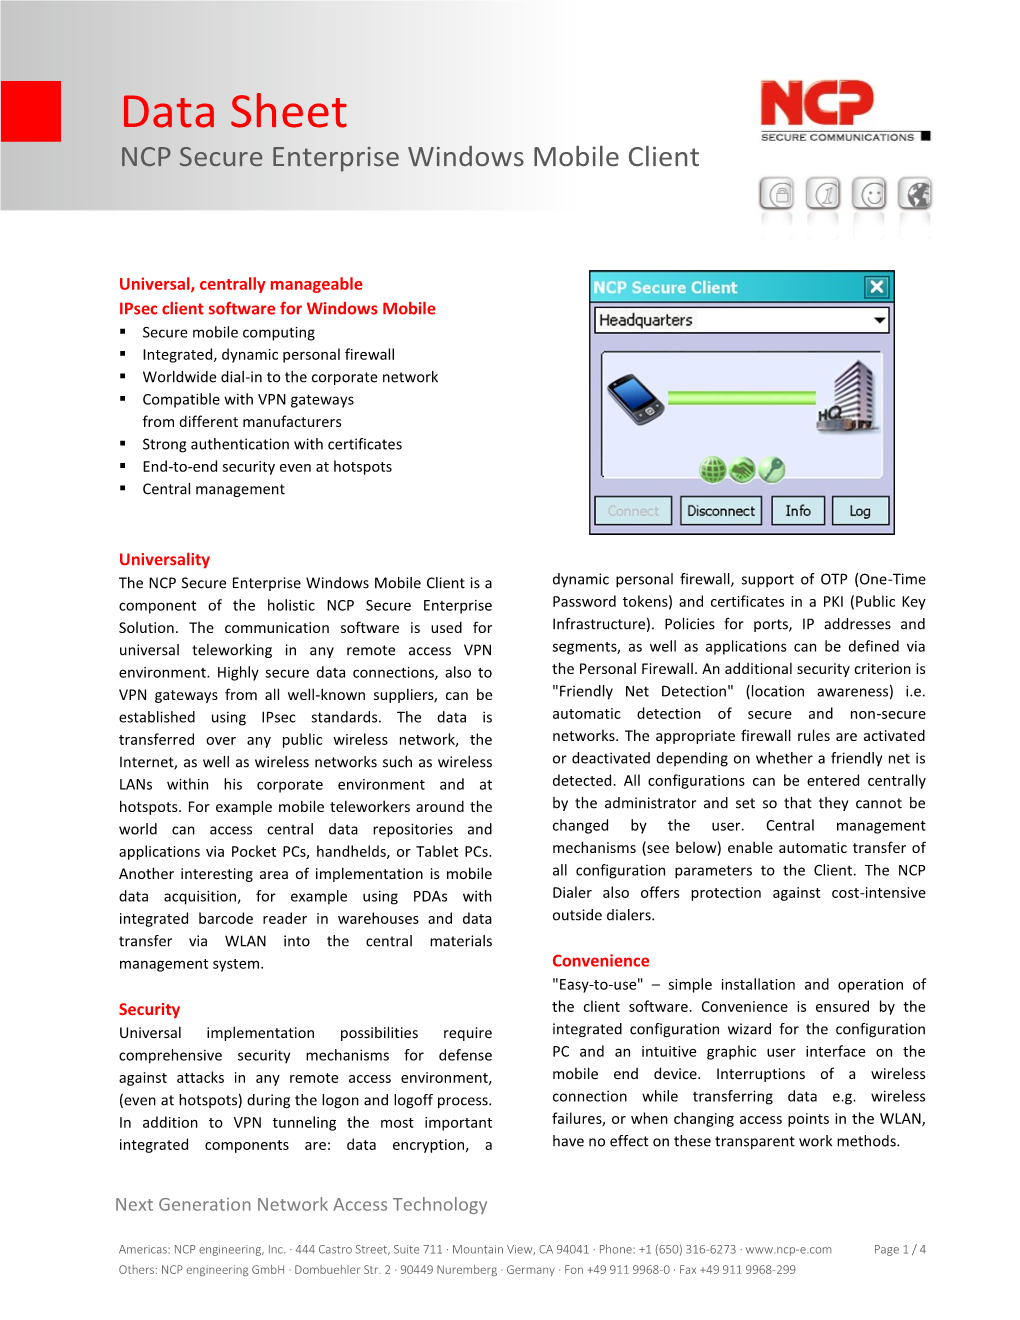 NCP Secure Enterprise Windows Mobile Client